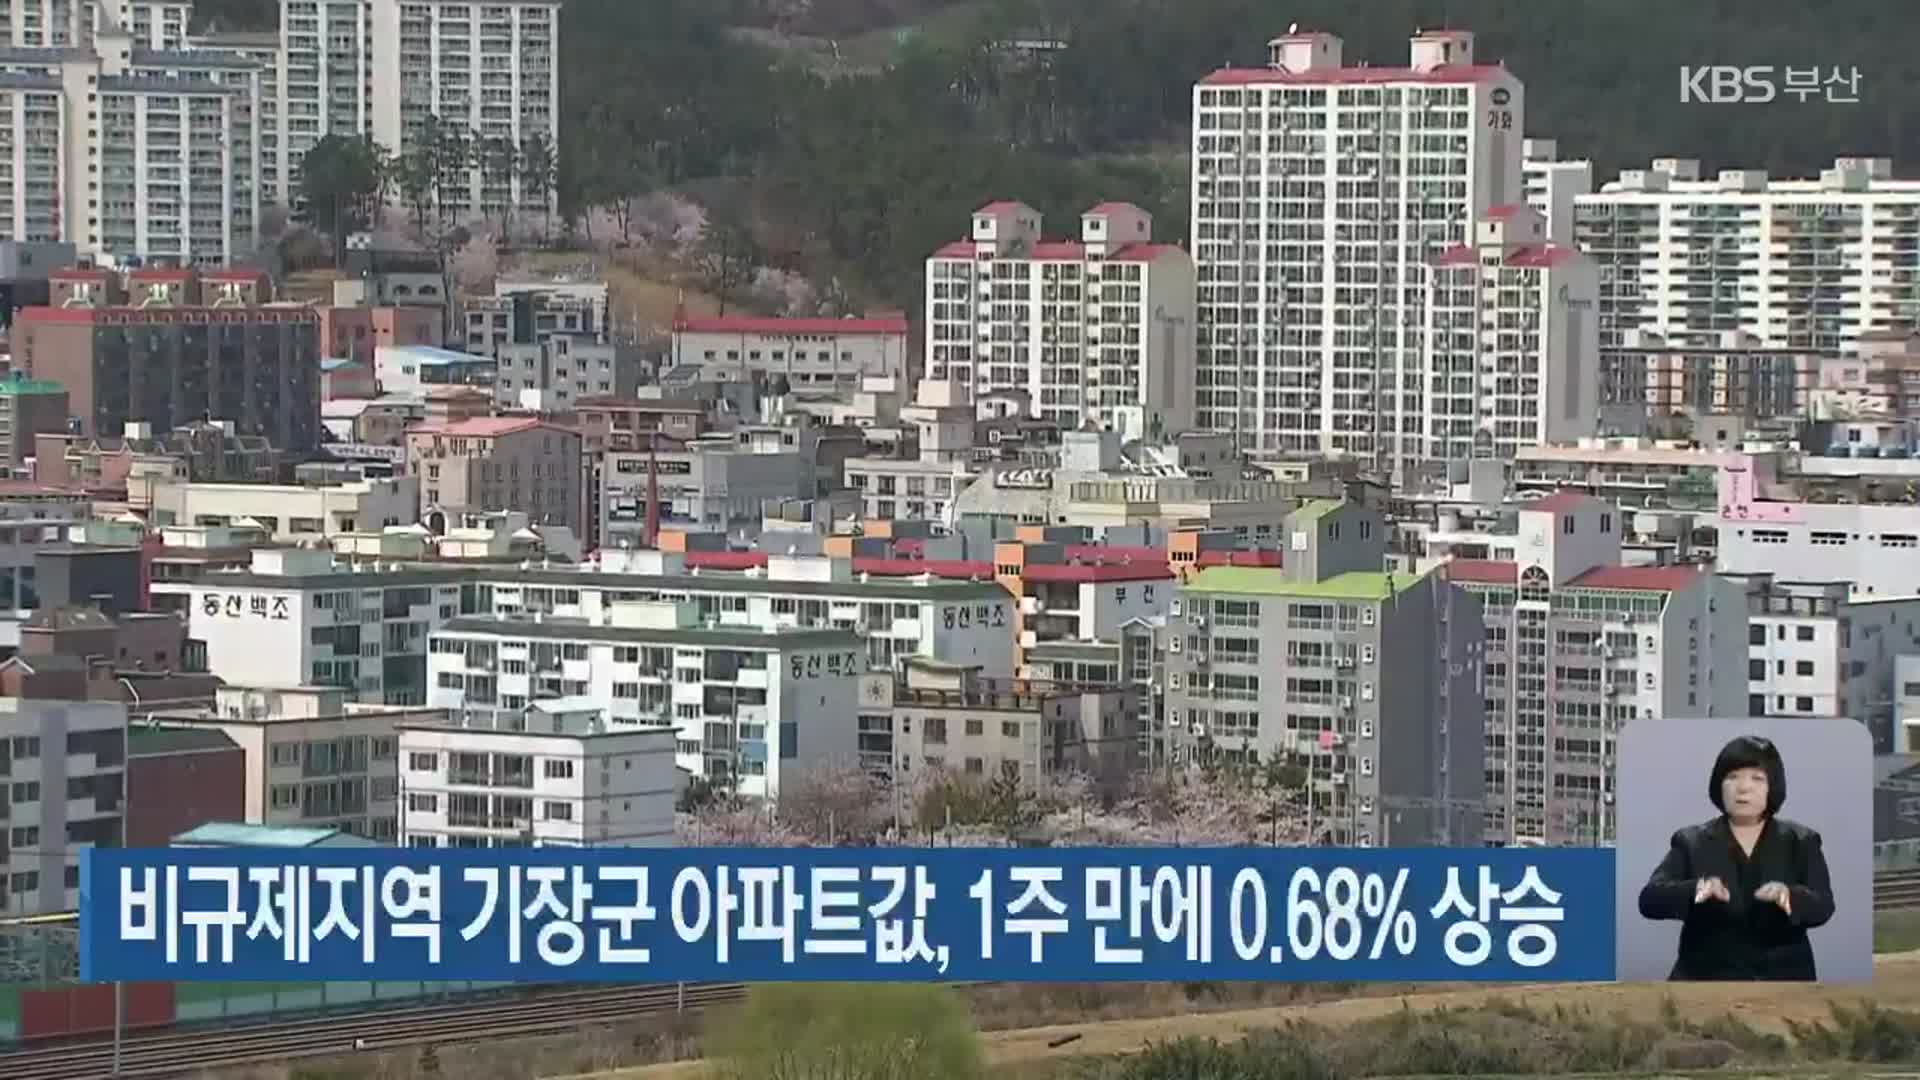 비규제지역 부산 기장군 아파트값, 1주 만에 0.68% 상승